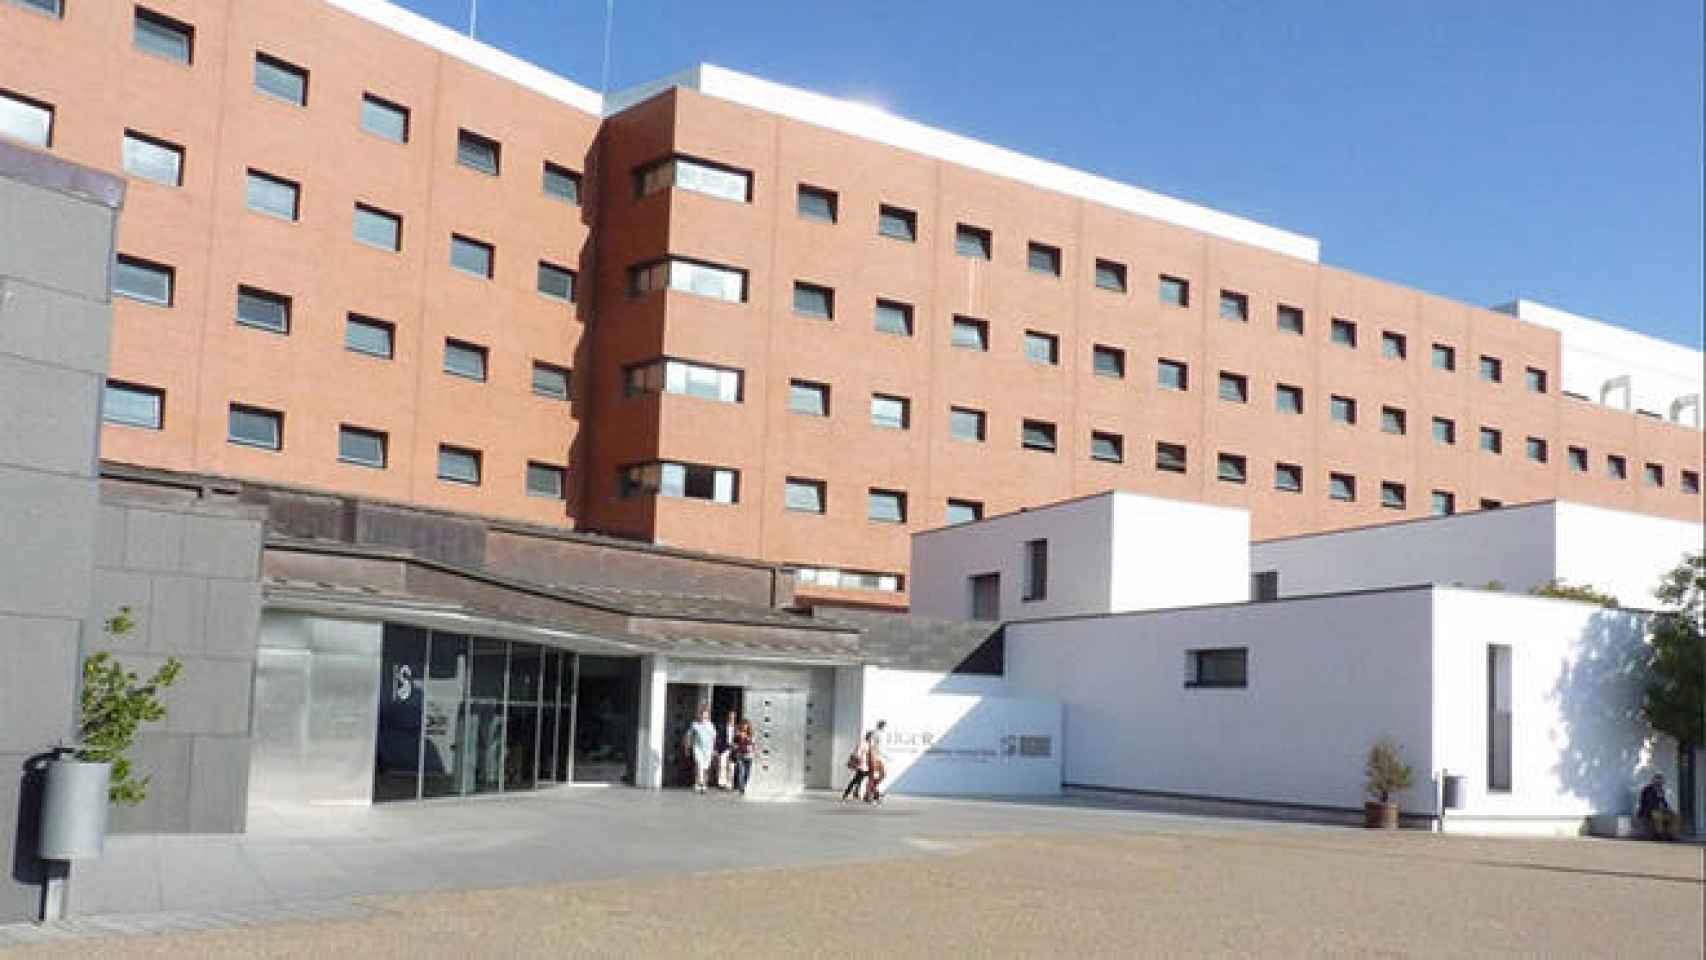 FOTO: Hospital de Ciudad Real (Europa Press).